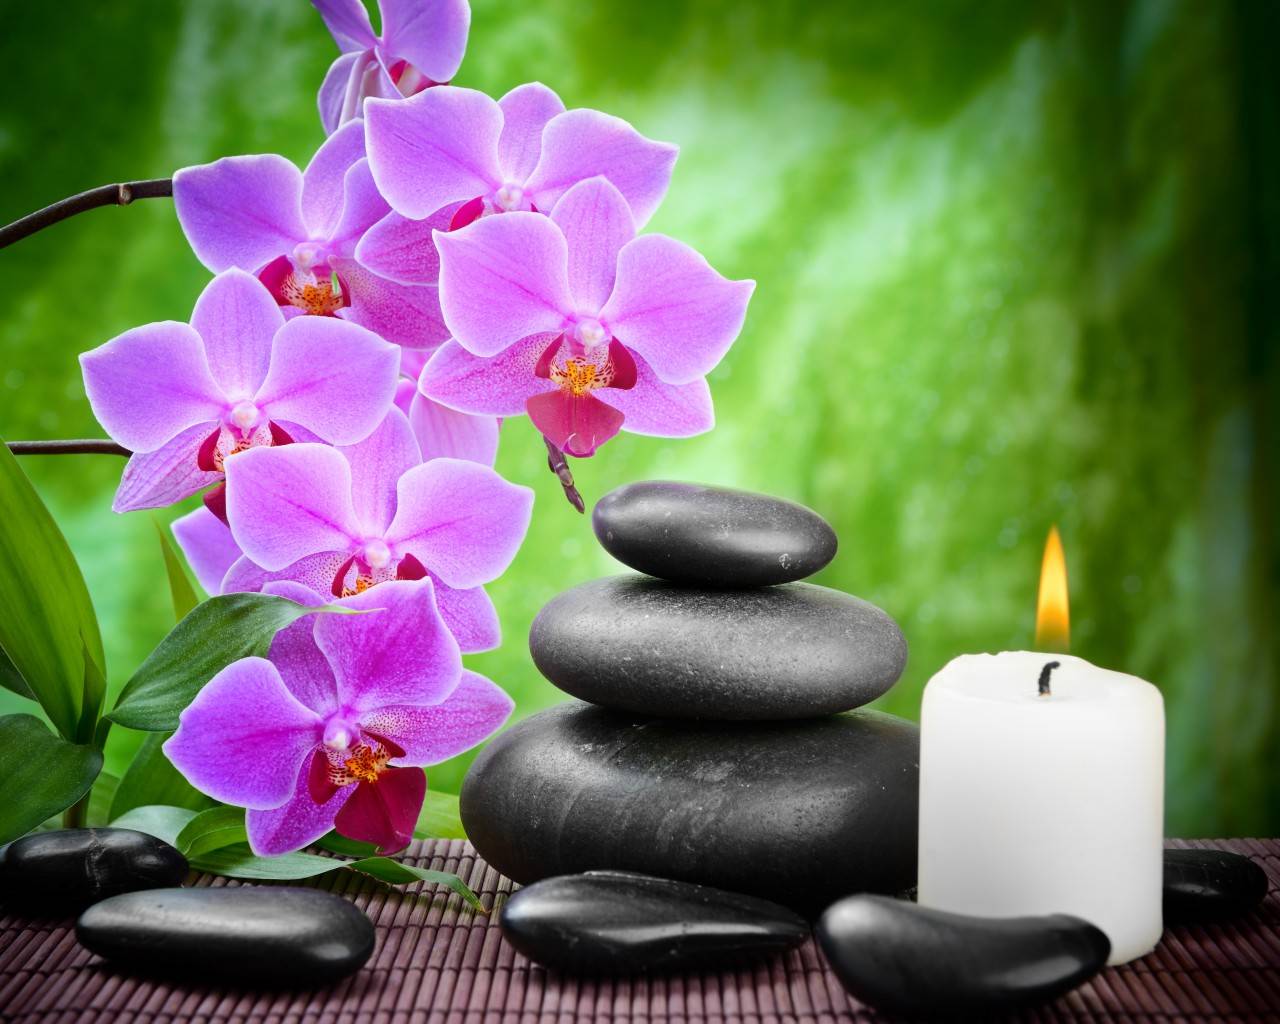 Орхидея в доме: хорошо или плохо | можно ли держать дома орхидею: приметы и суеверия | astro7